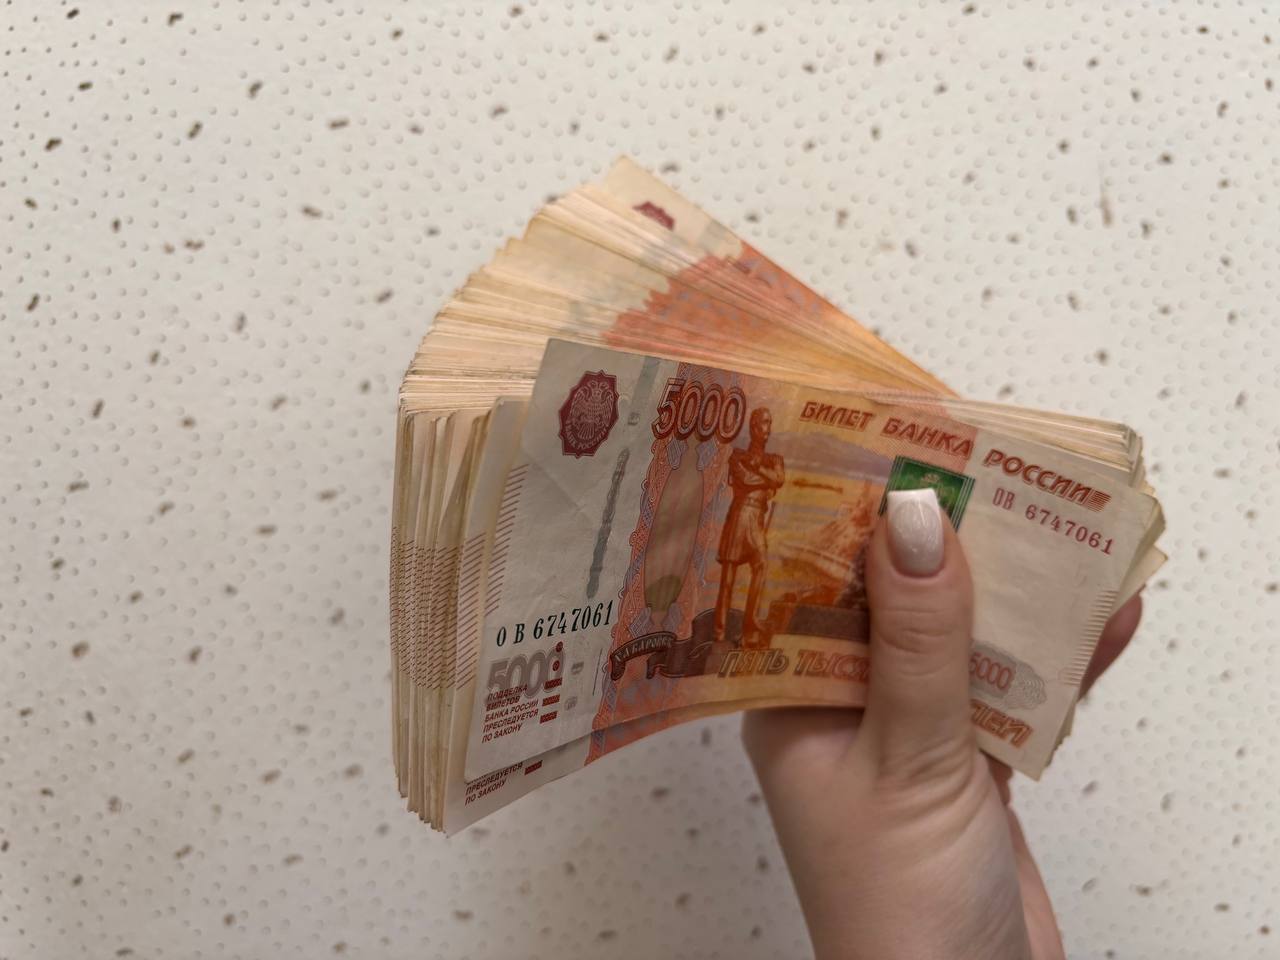 Более полумиллиона рублей перевела псевдоброкерам жительница ЕАО